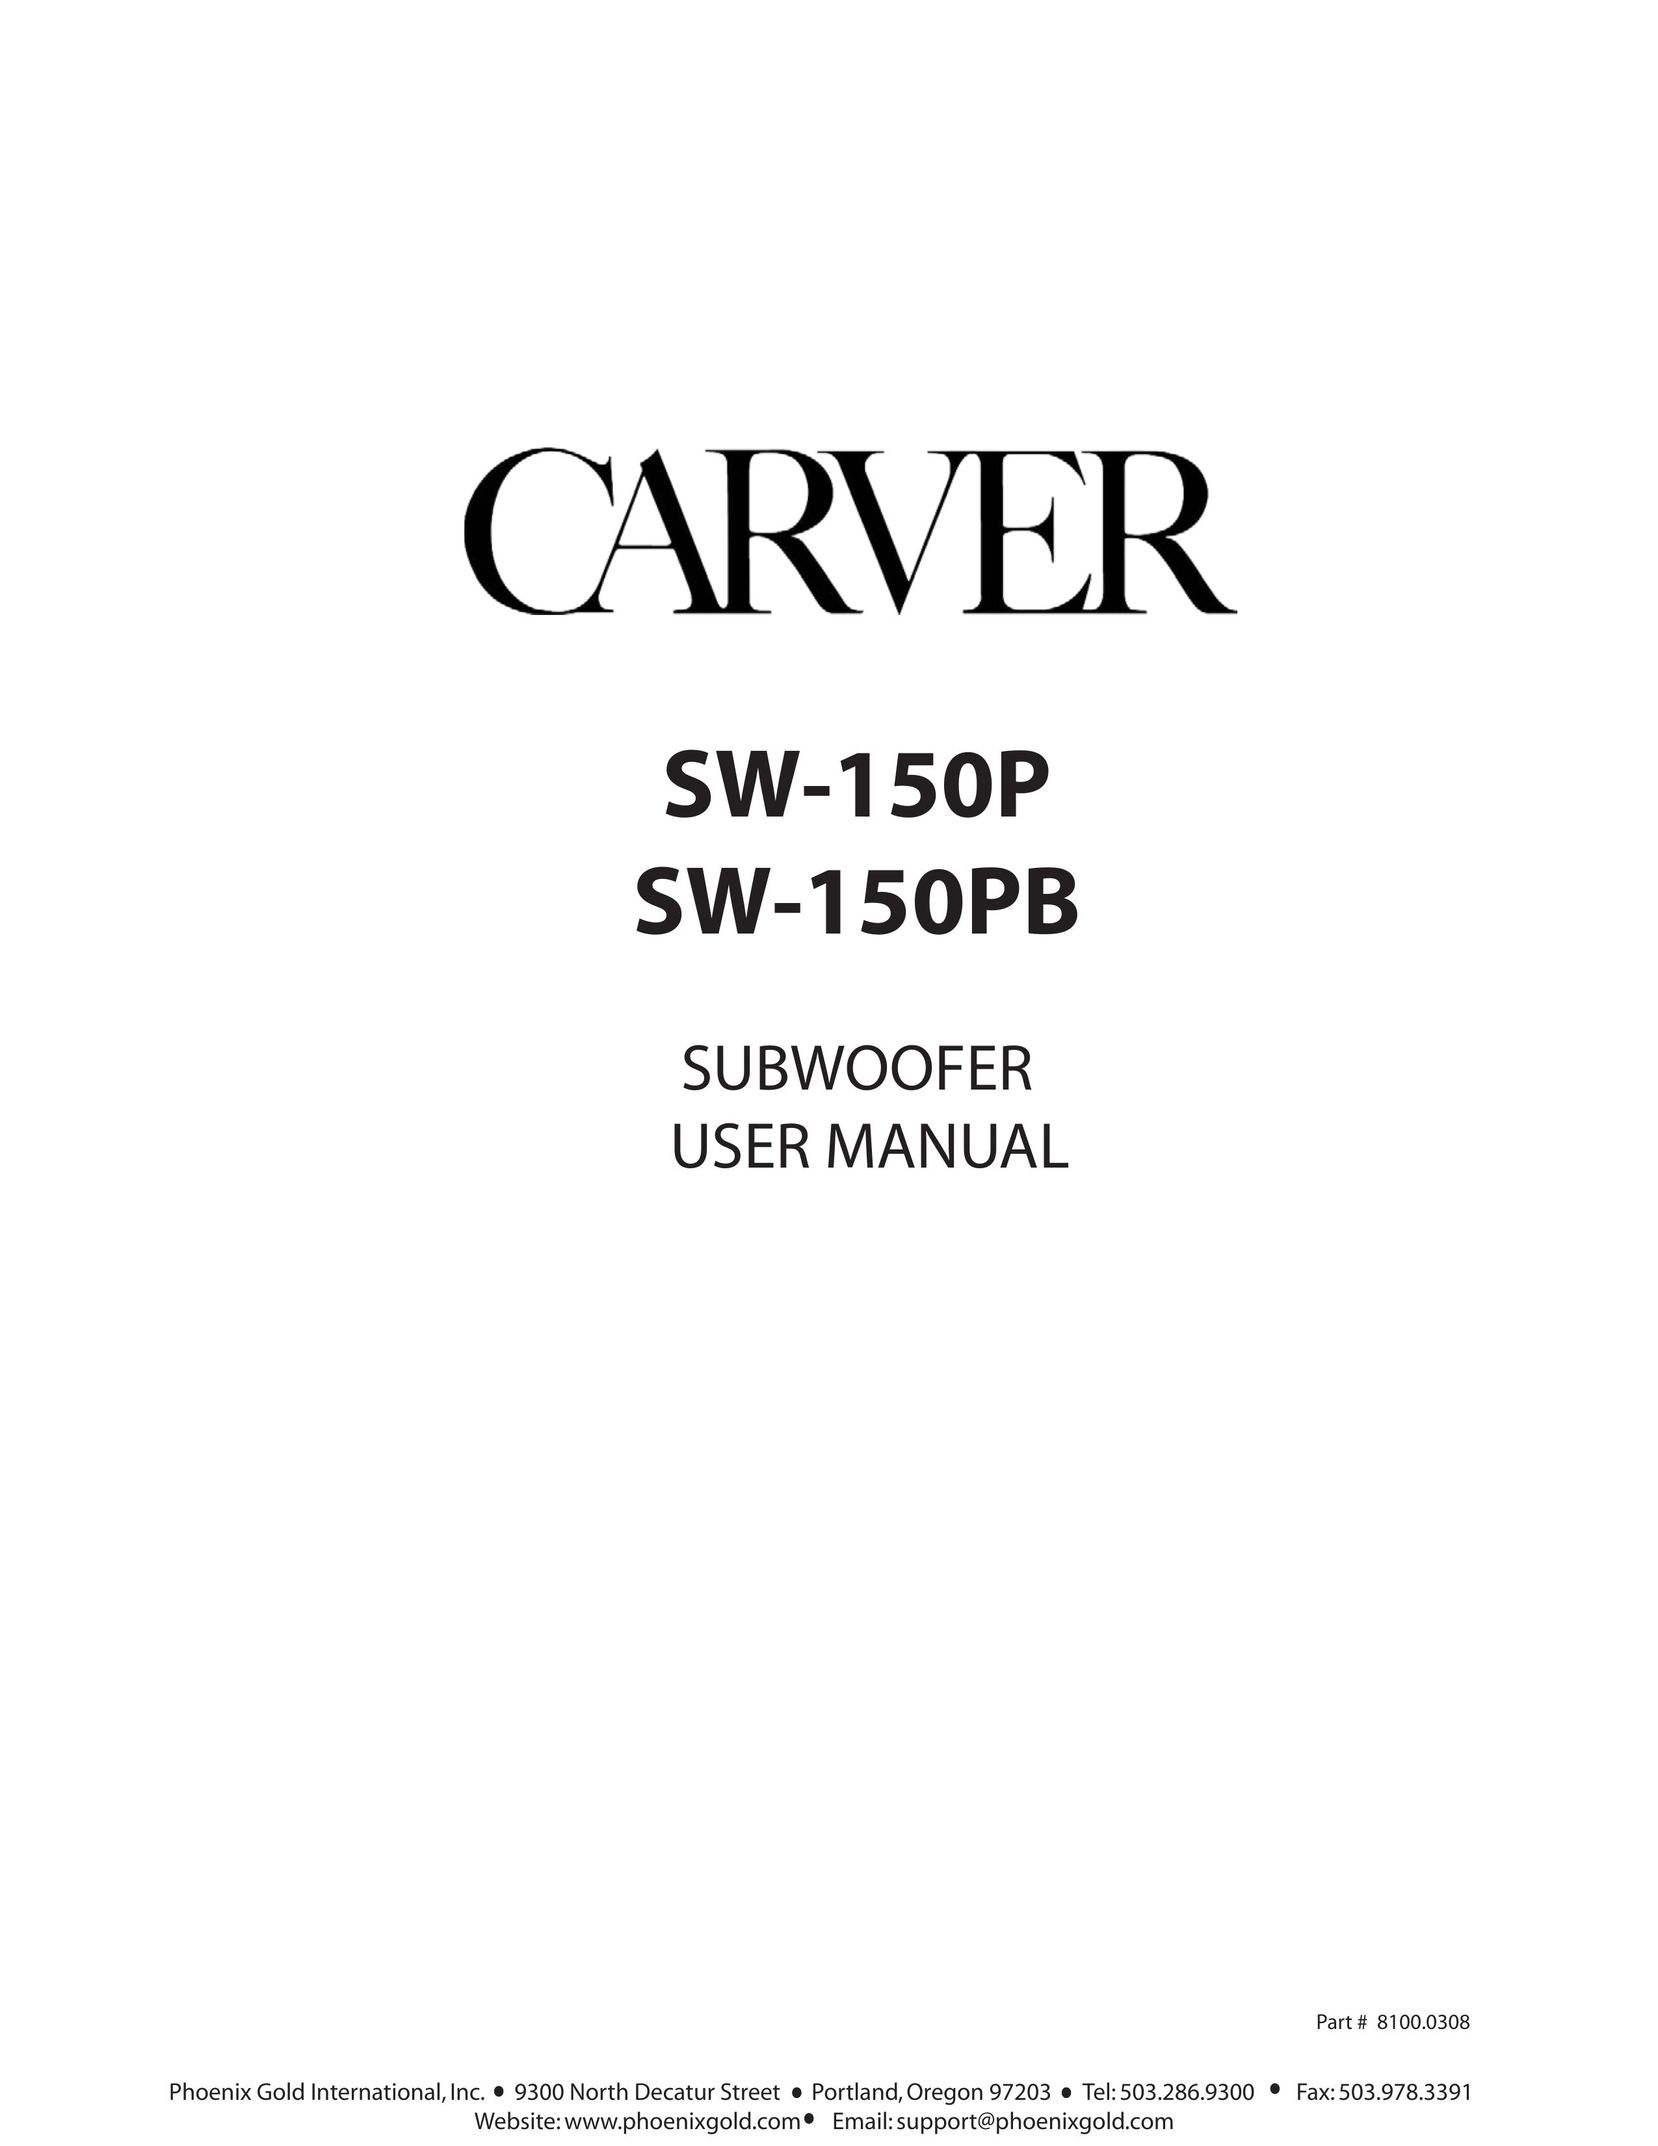 Carver carver subwoofer Speaker System User Manual